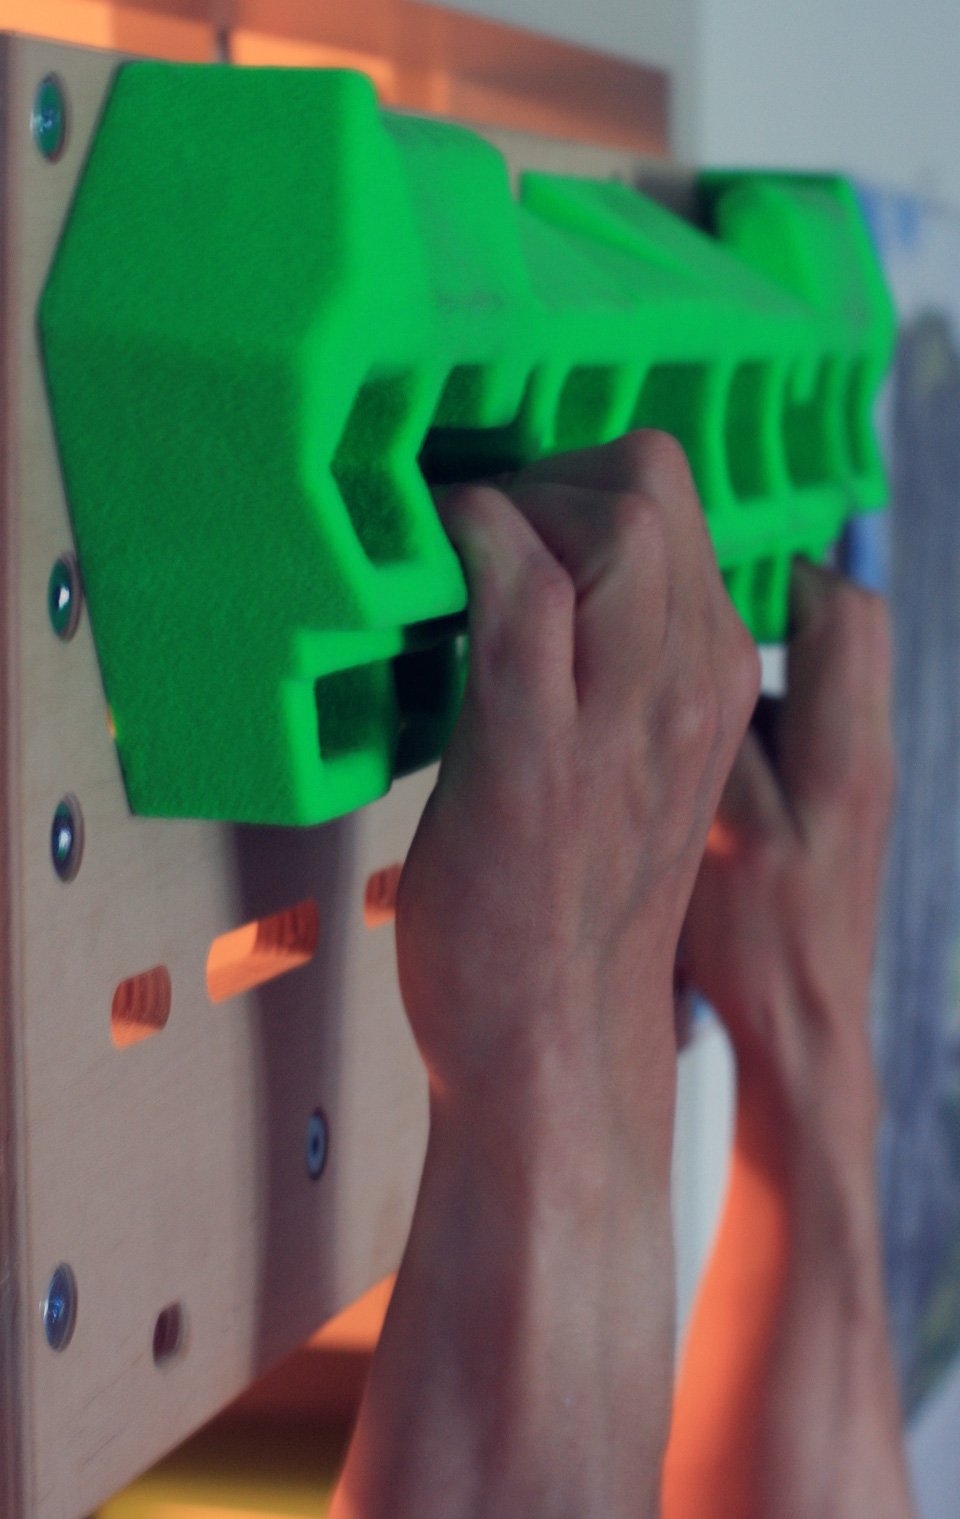 Testbericht - smartrock griptonite Fingerboard: Turn it your way – kompaktes Fingerboard für effektives Fingertraining (Teil 2/2)